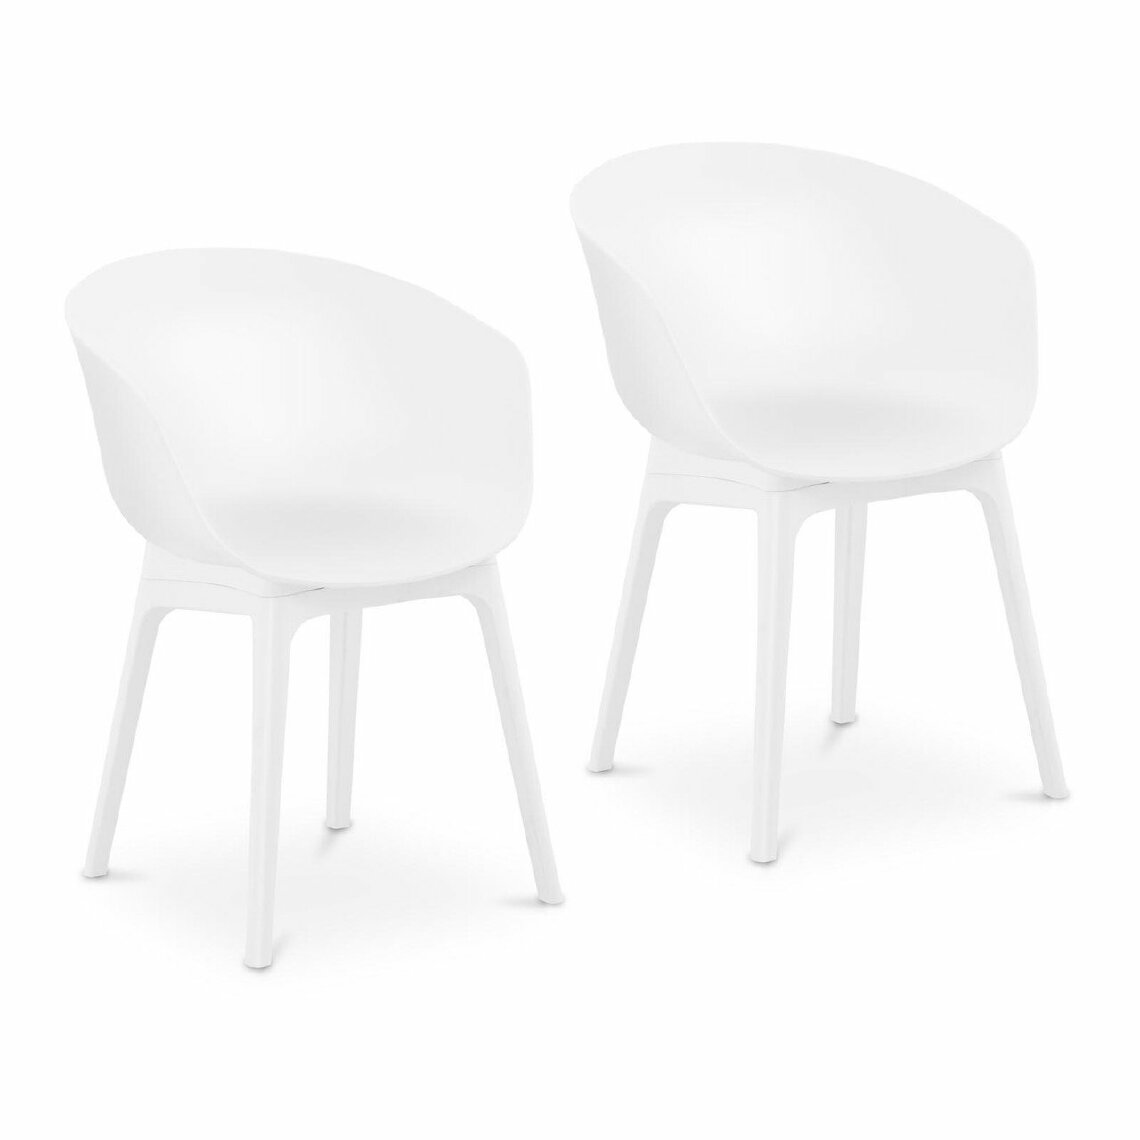 Helloshop26 - Lot de 2 chaises salon salle à manger 150 kg max surface d'assise de 60 x 44 cm coloris blanc 14_0000878 - Chaises